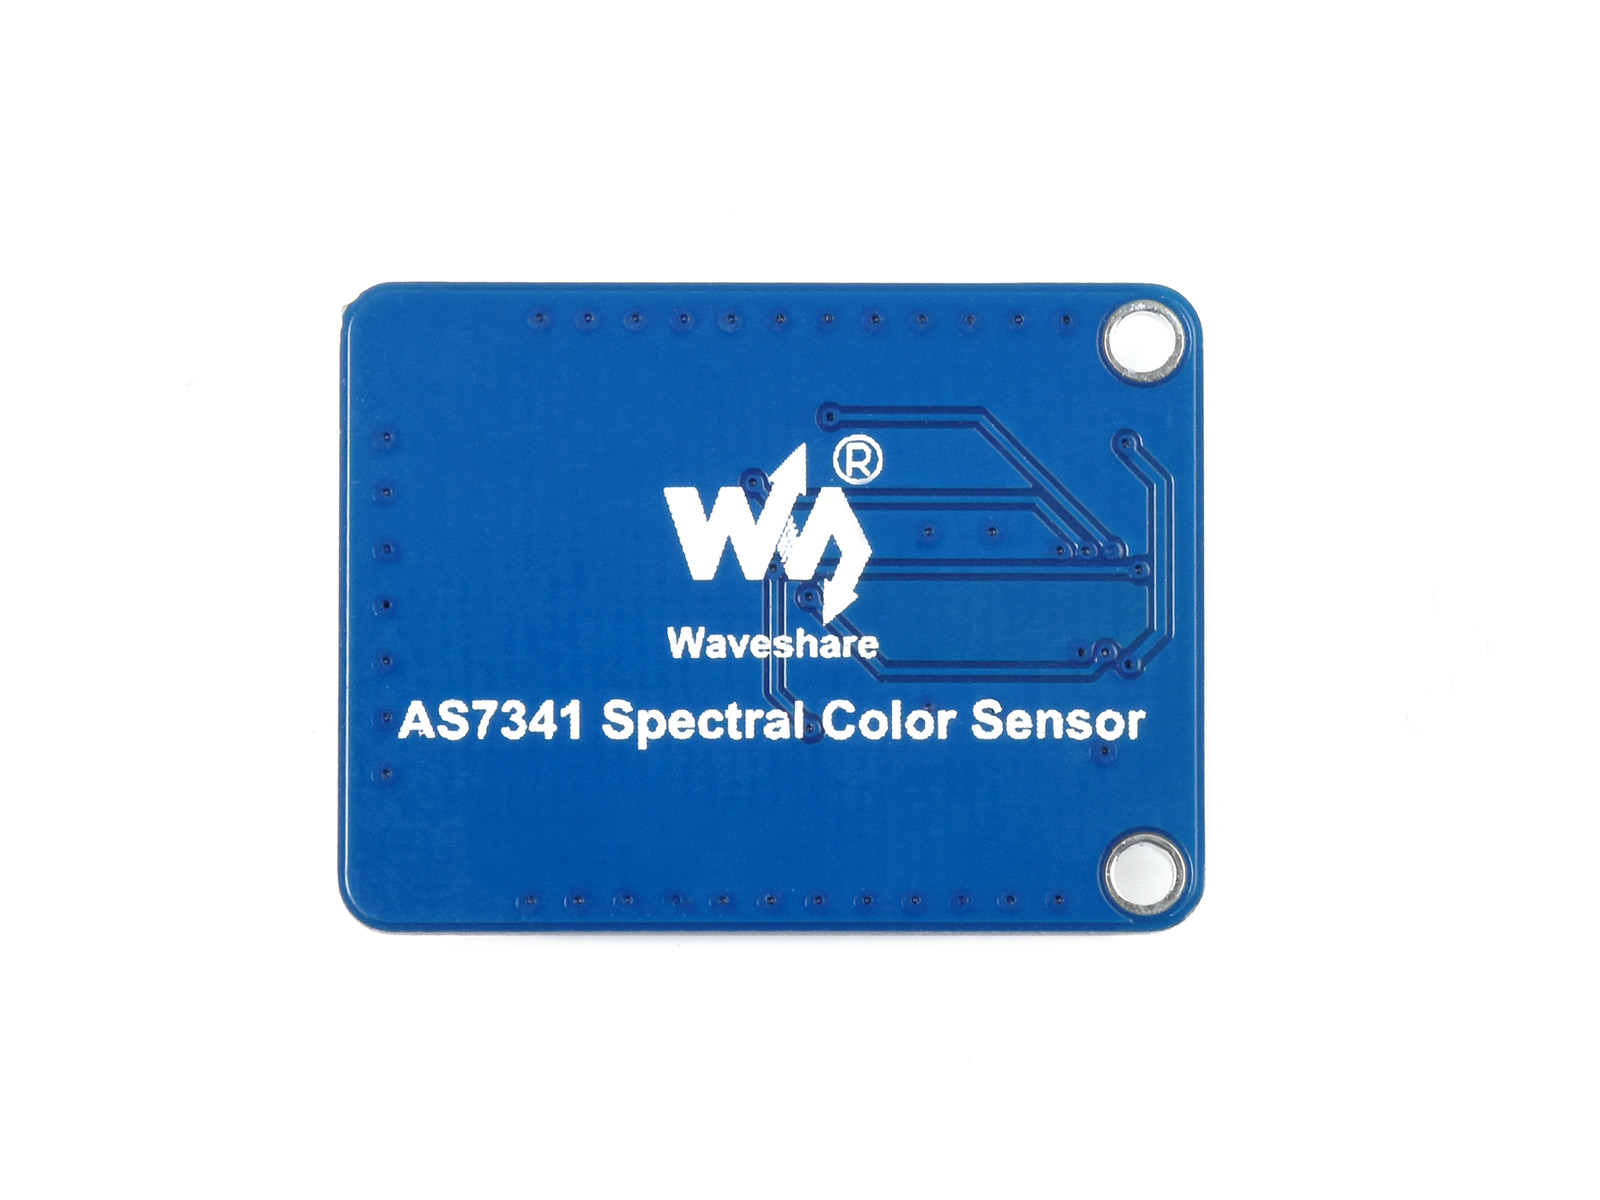 AS7341 Spectral Color Sensor, Visible Spectrum Sensor, Multi Channels, High Precision, I2C Bus